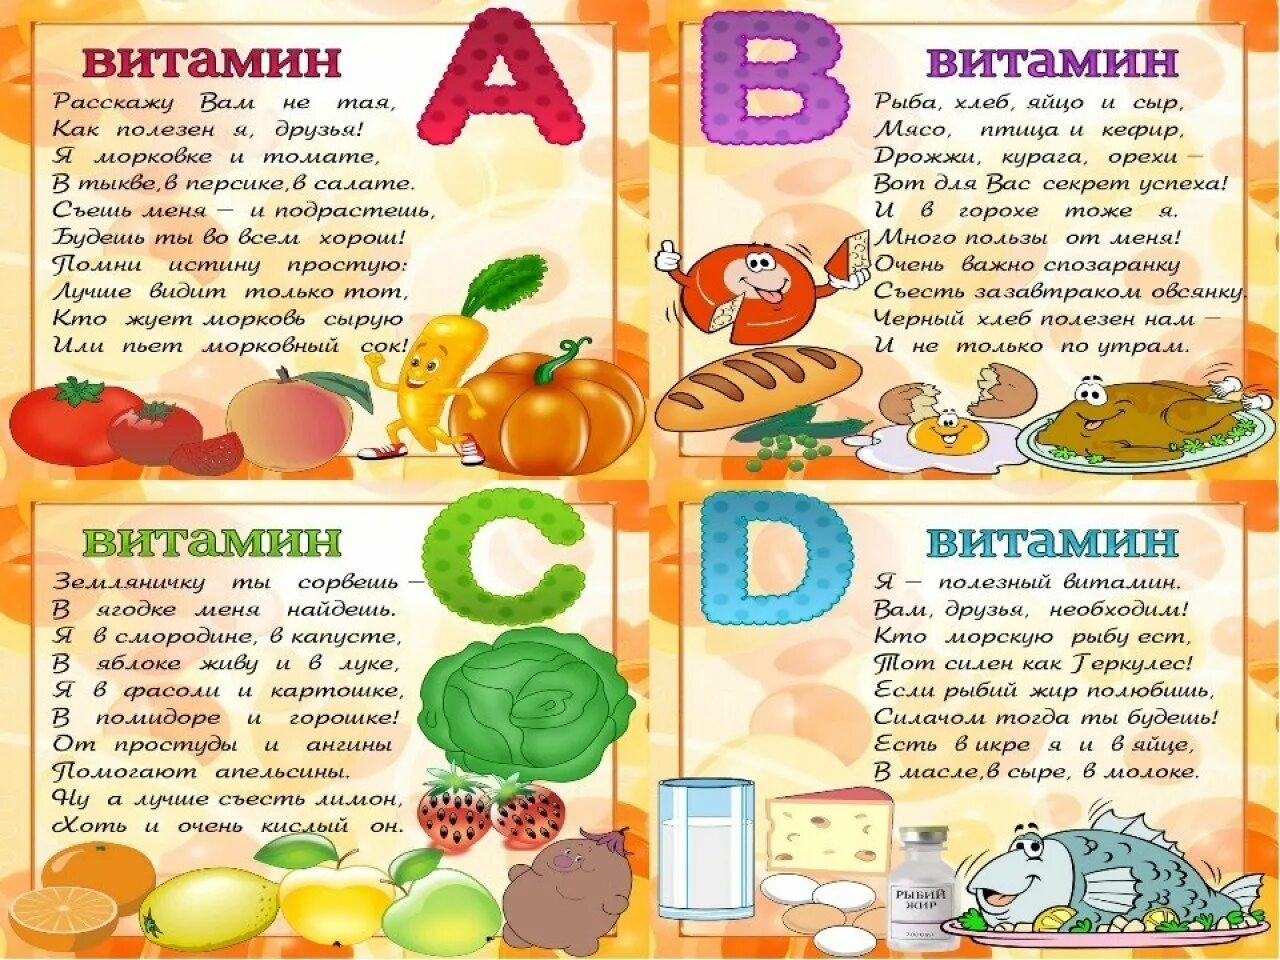 Рациональное питание витамины. Витамины для детей. Тема витамины для детей. Стихи про витамины. Витамины в овощах и фруктах для детей.